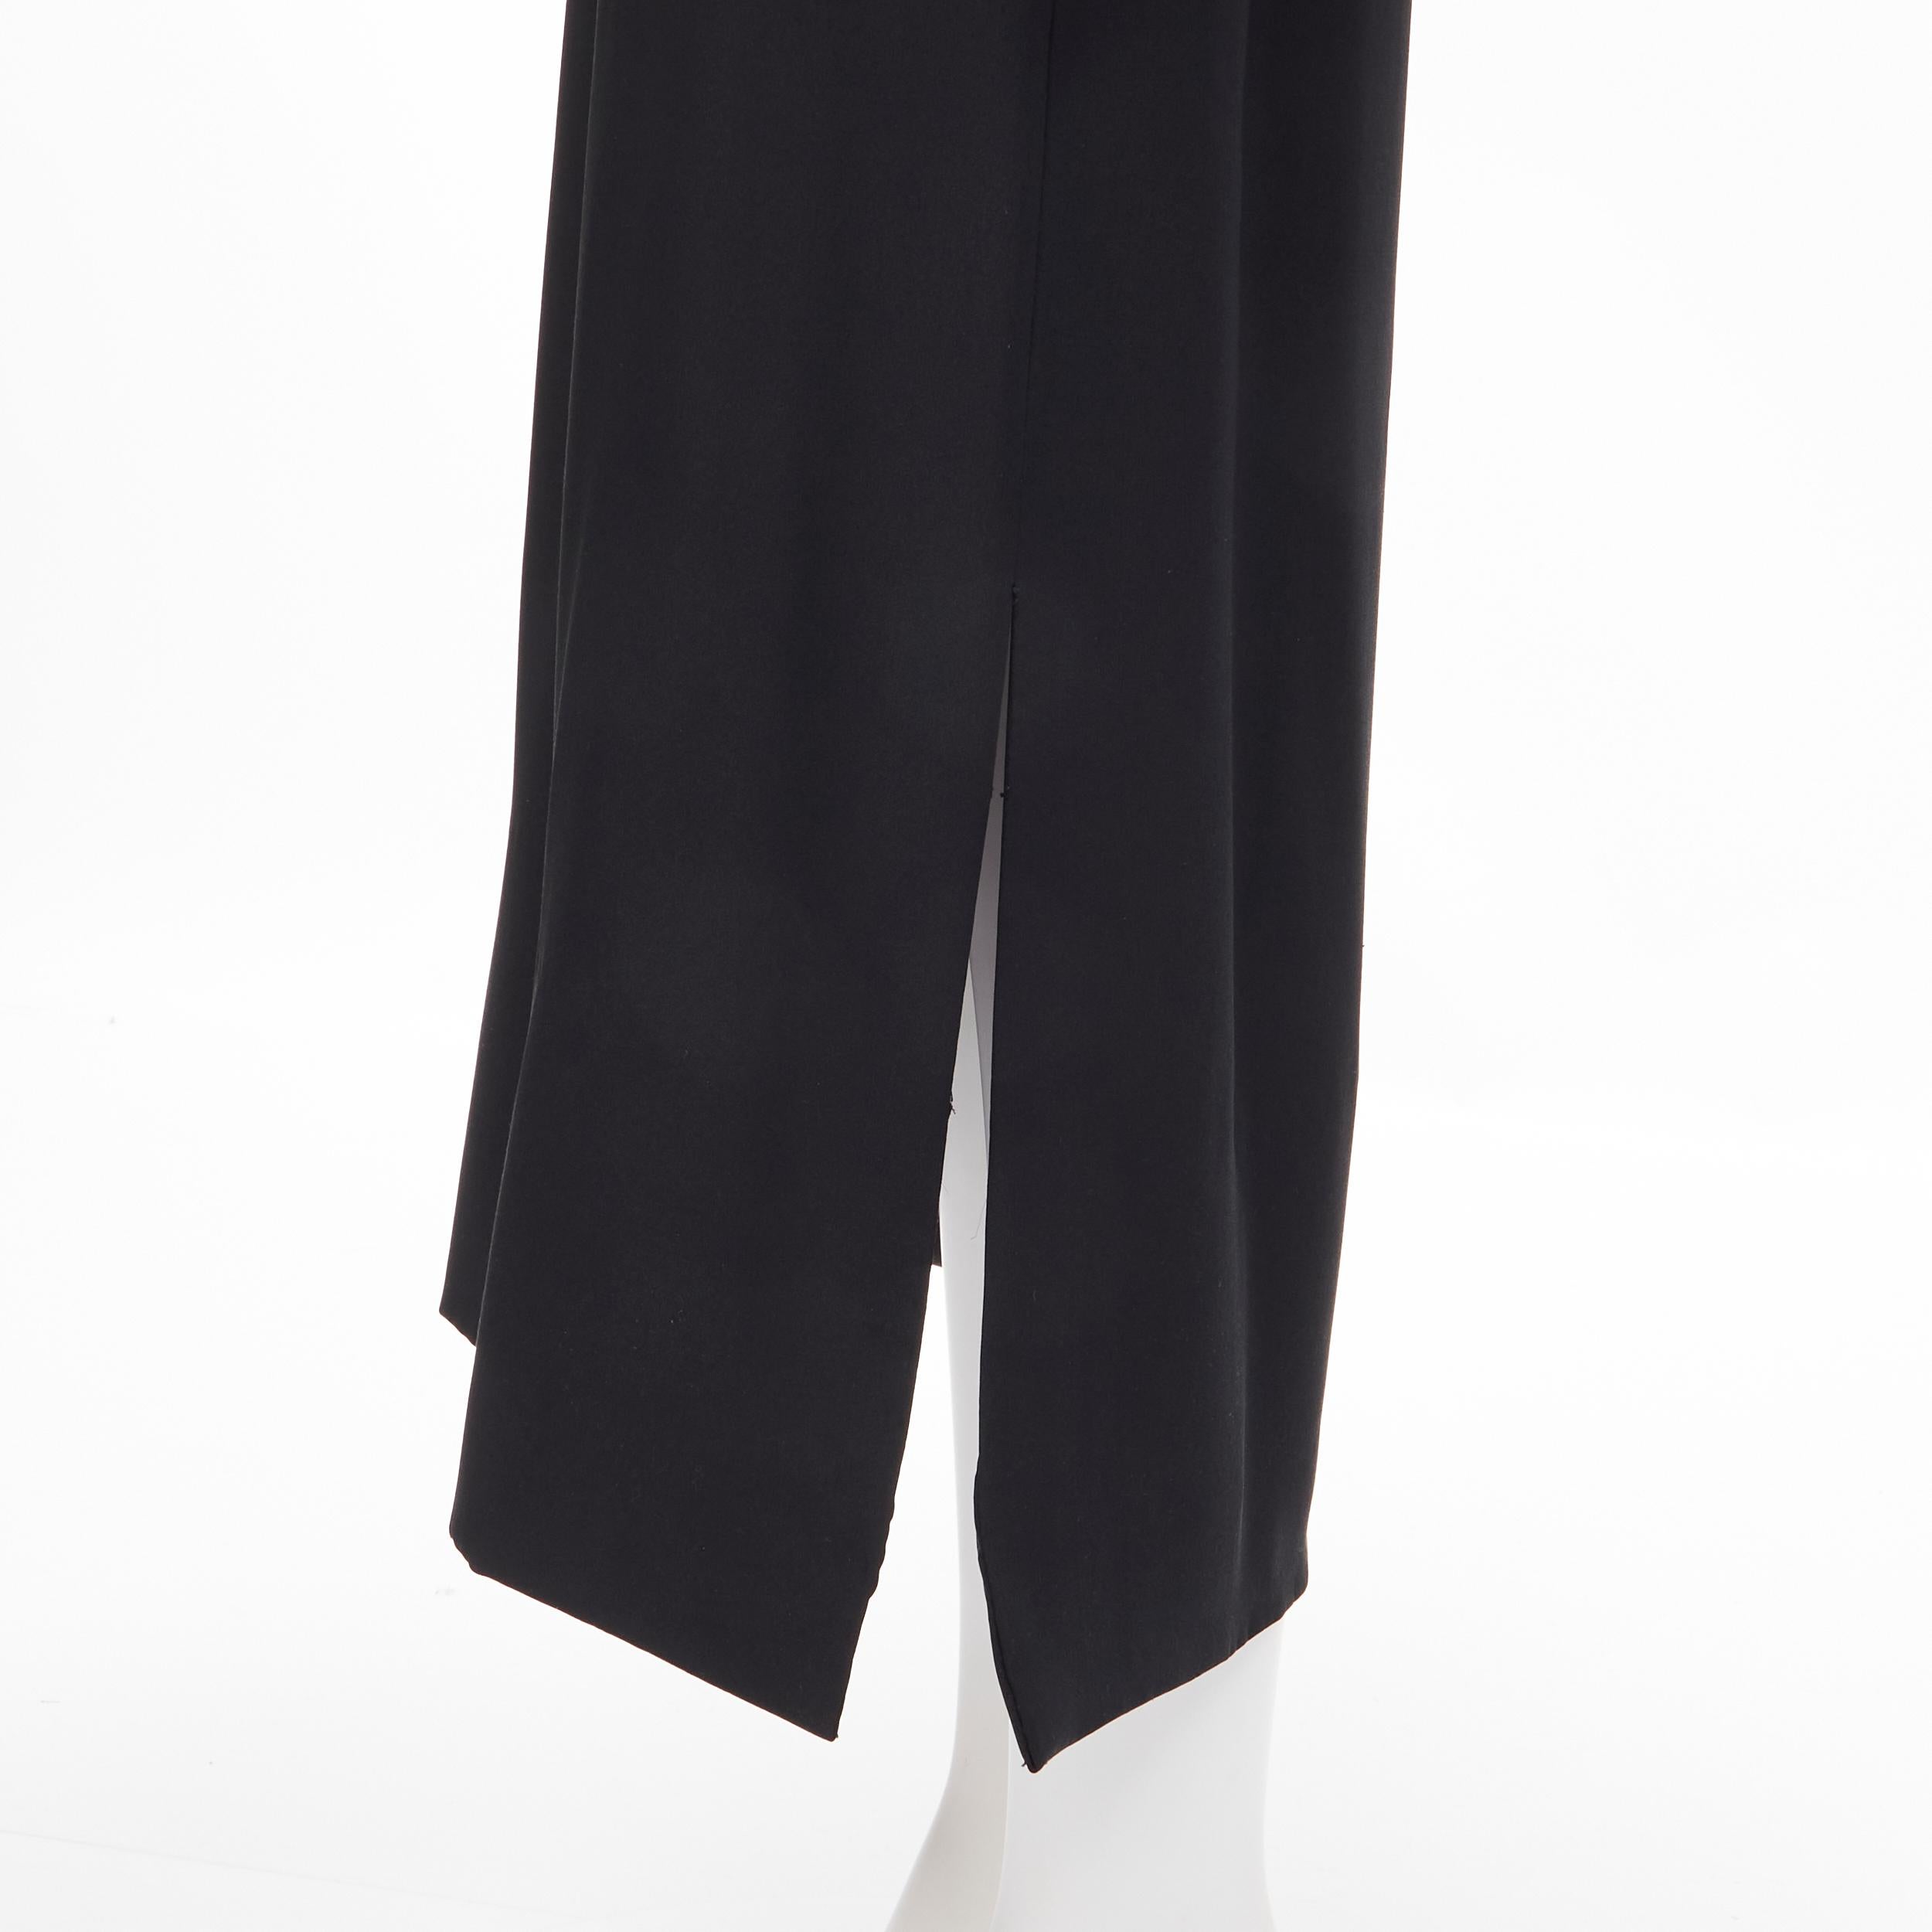 MADAME GRES Haute Couture Paris 1972 black crepe slash slit cut out dress M For Sale 4